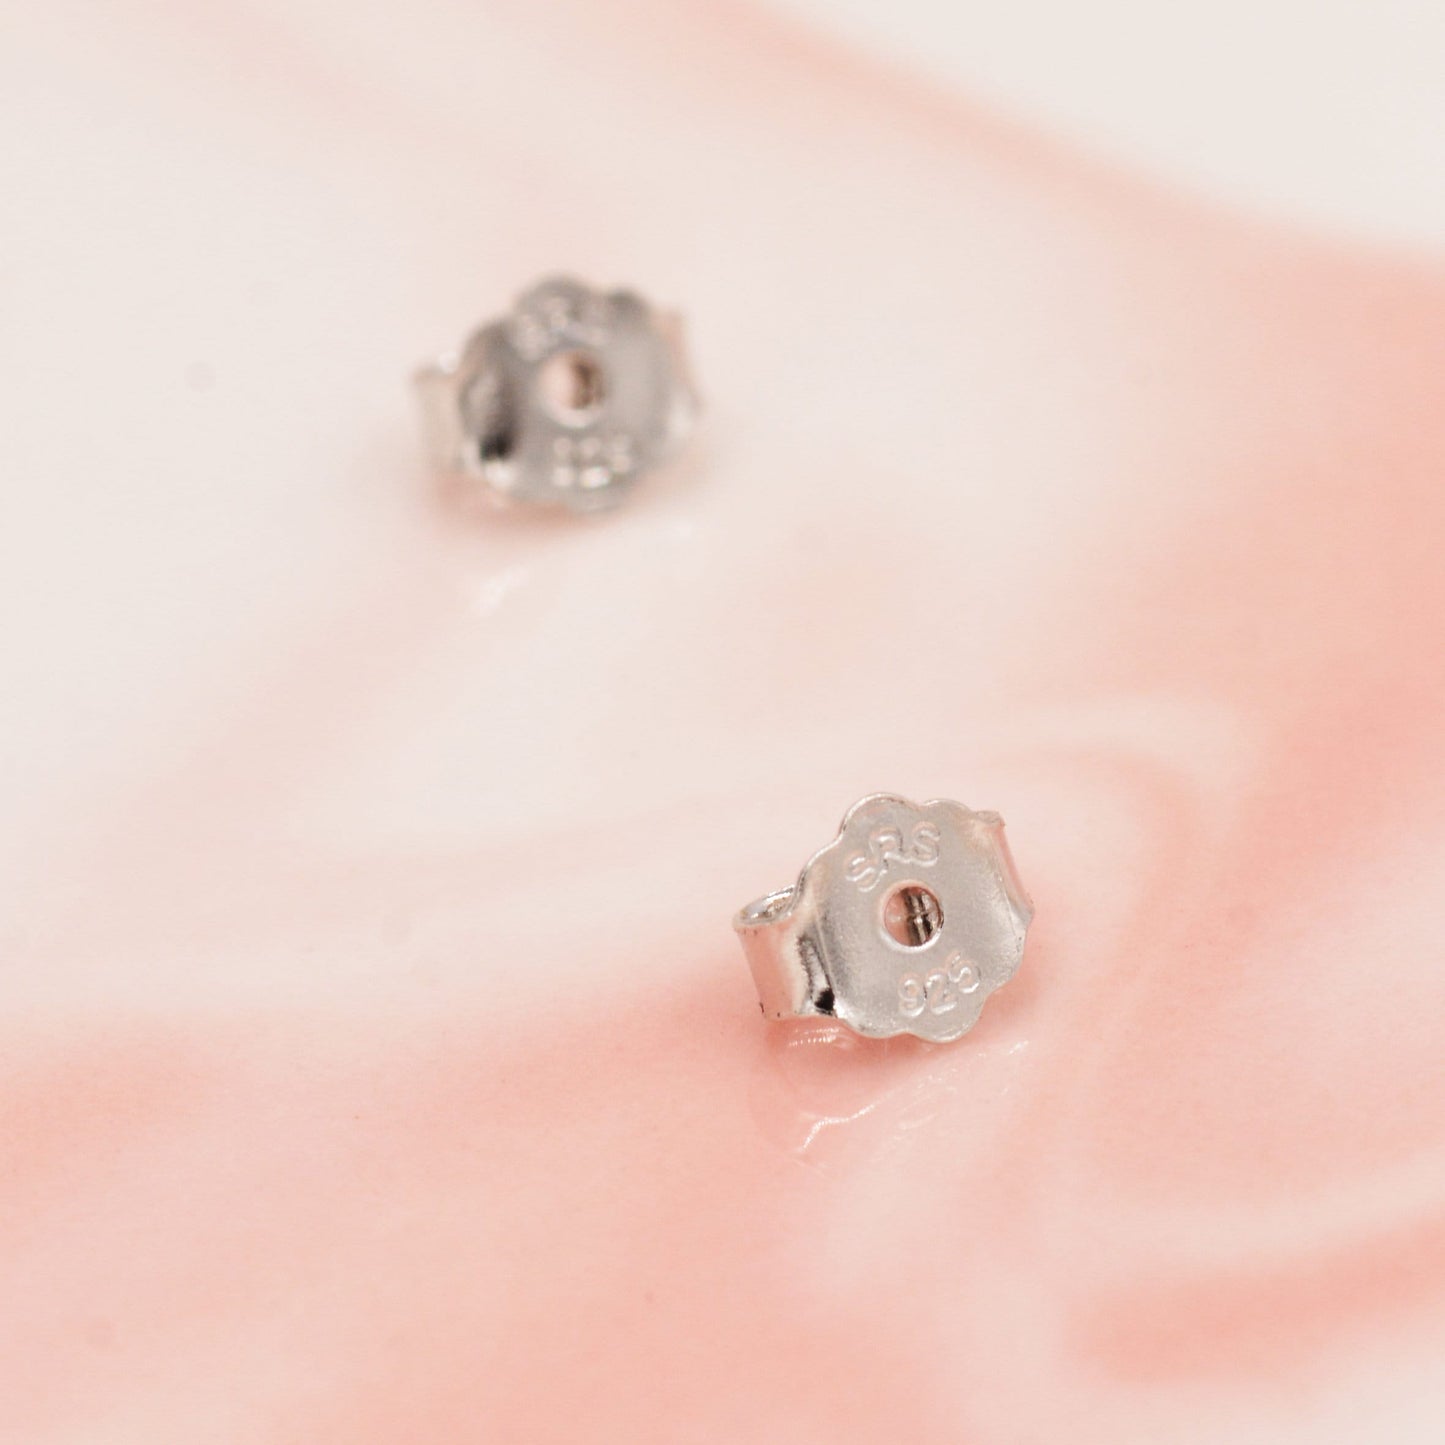 Opal CZ Halo Stud Earrings in Sterling Silver - 8mm - Blue or White Opal, Sustainable Lab Opal - Petite Stud Earrings